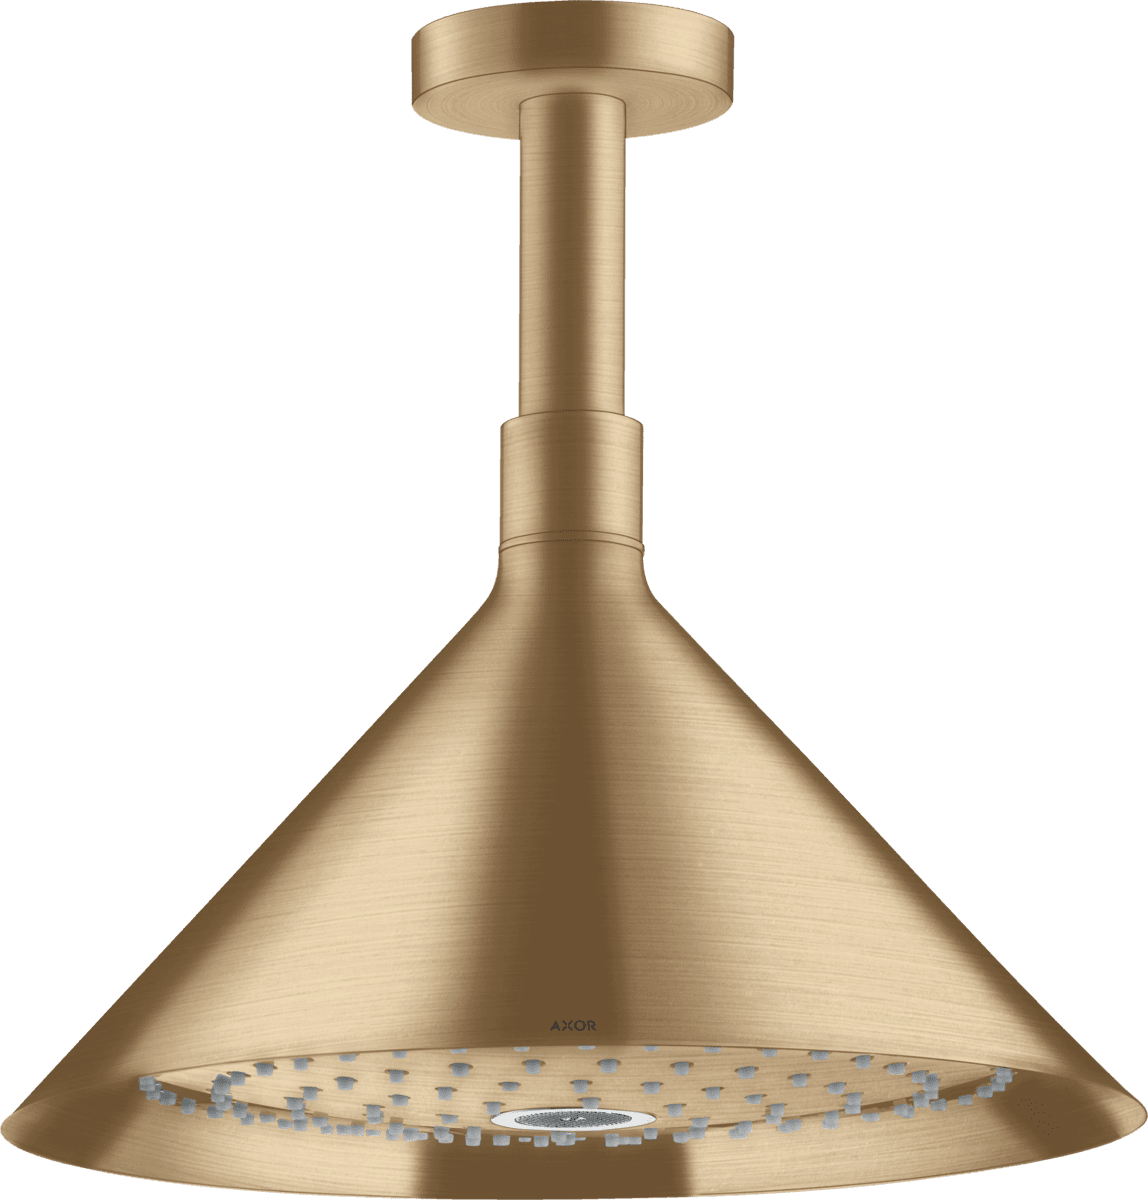 Obrázek HANSGROHE AXOR Sprchy/přední horní sprcha 240 2jet s připojením ke stropu #26022140 - kartáčovaný bronz